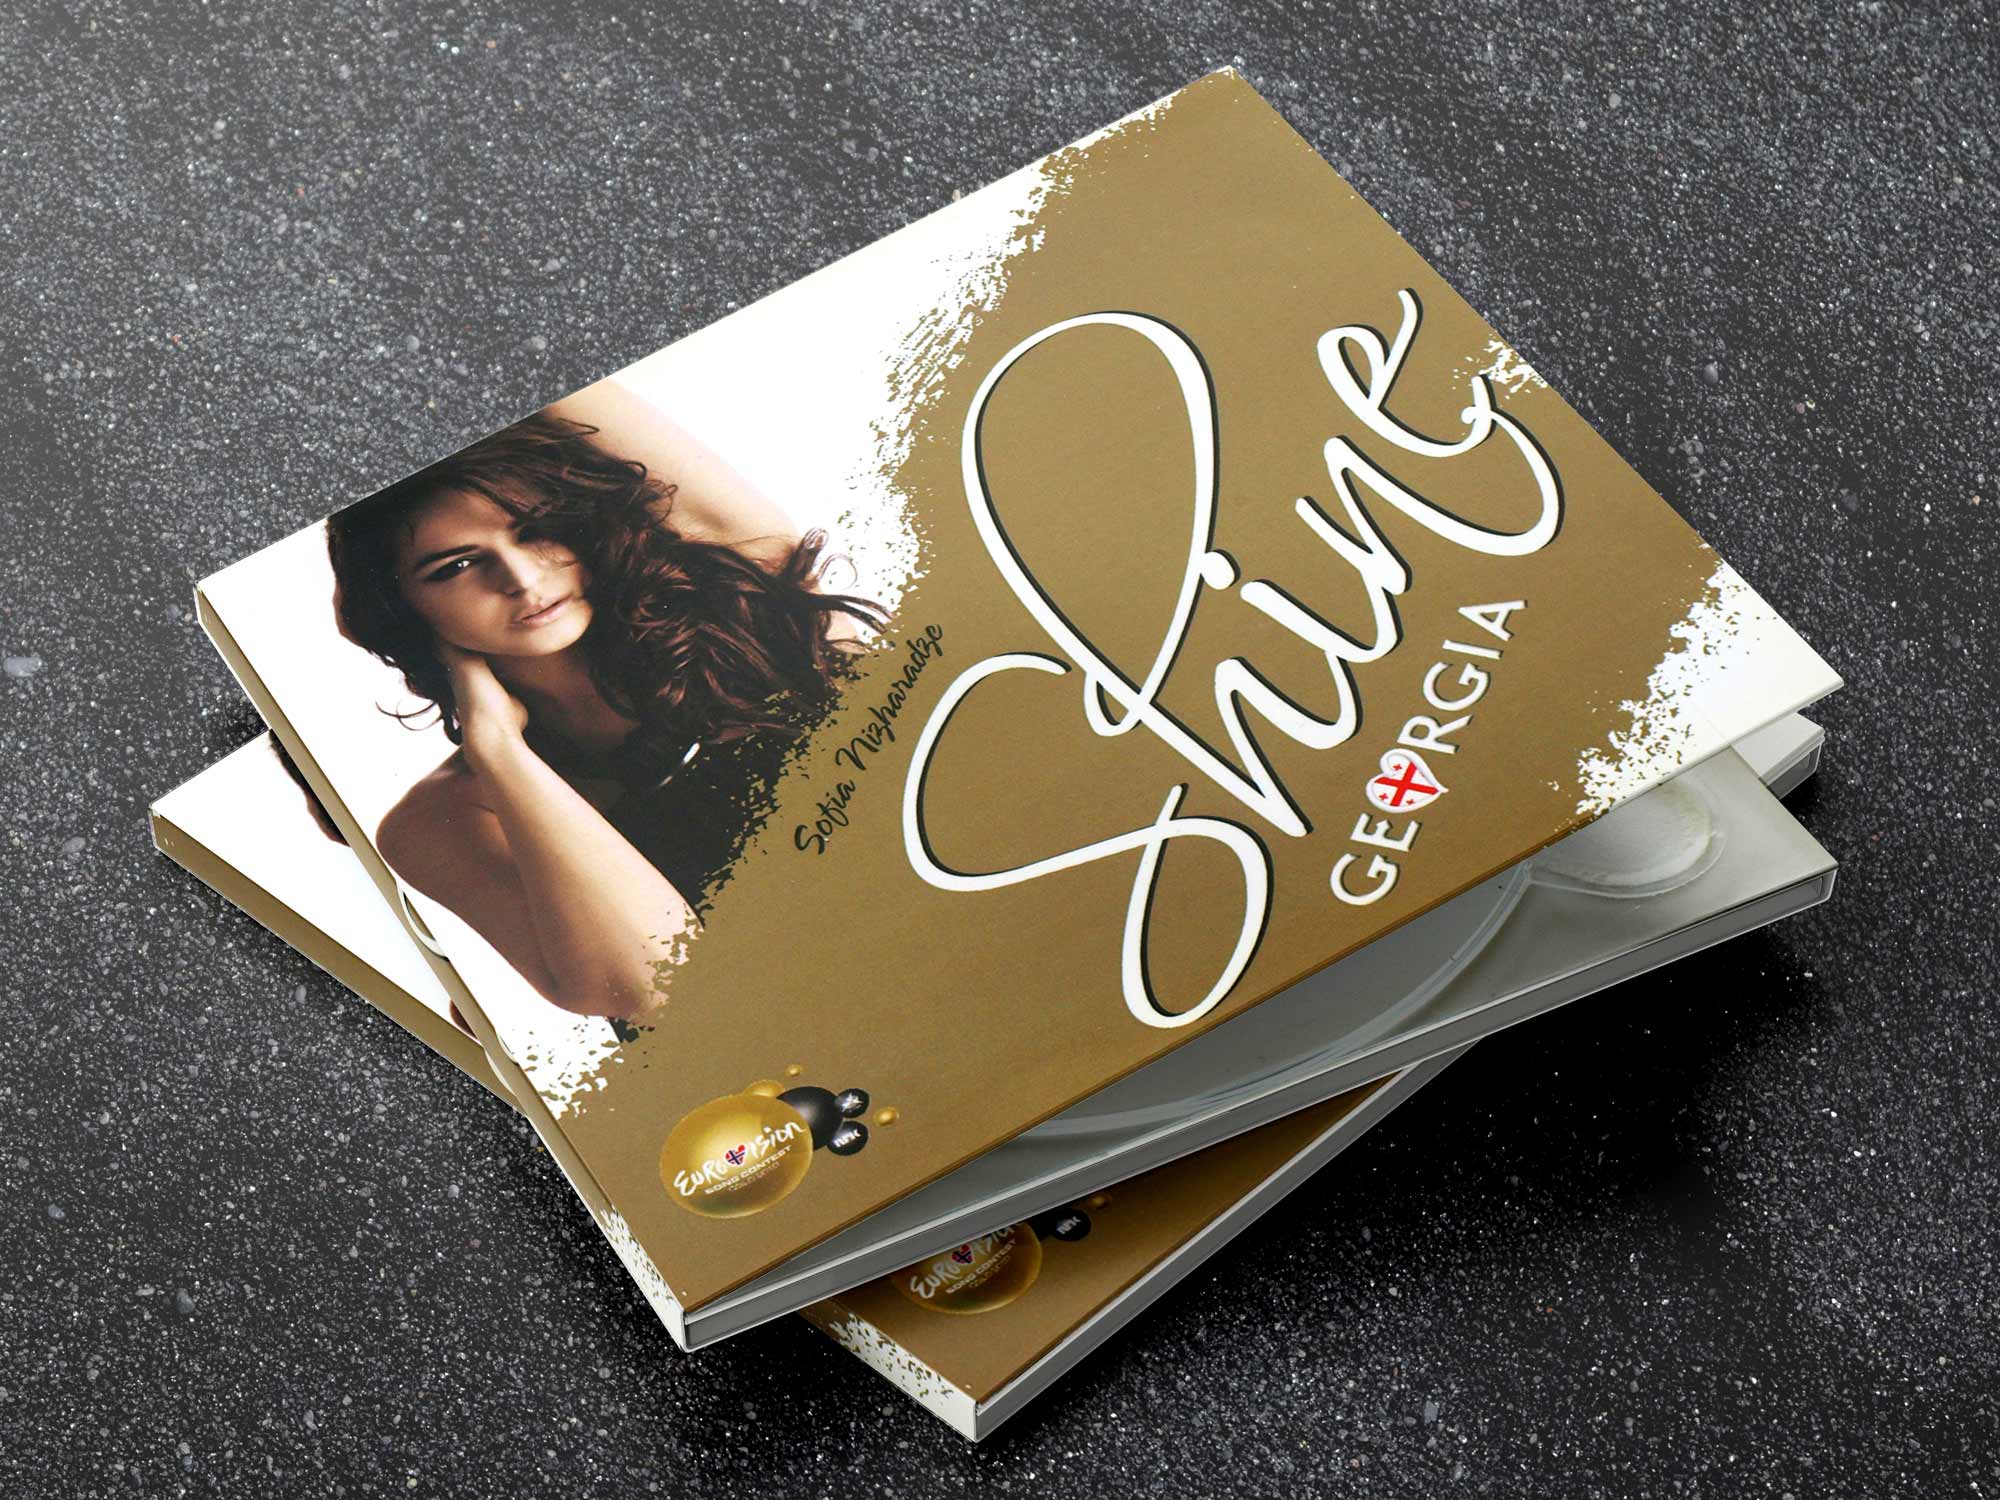 Eurovision 2010 Georgia Promotion CD